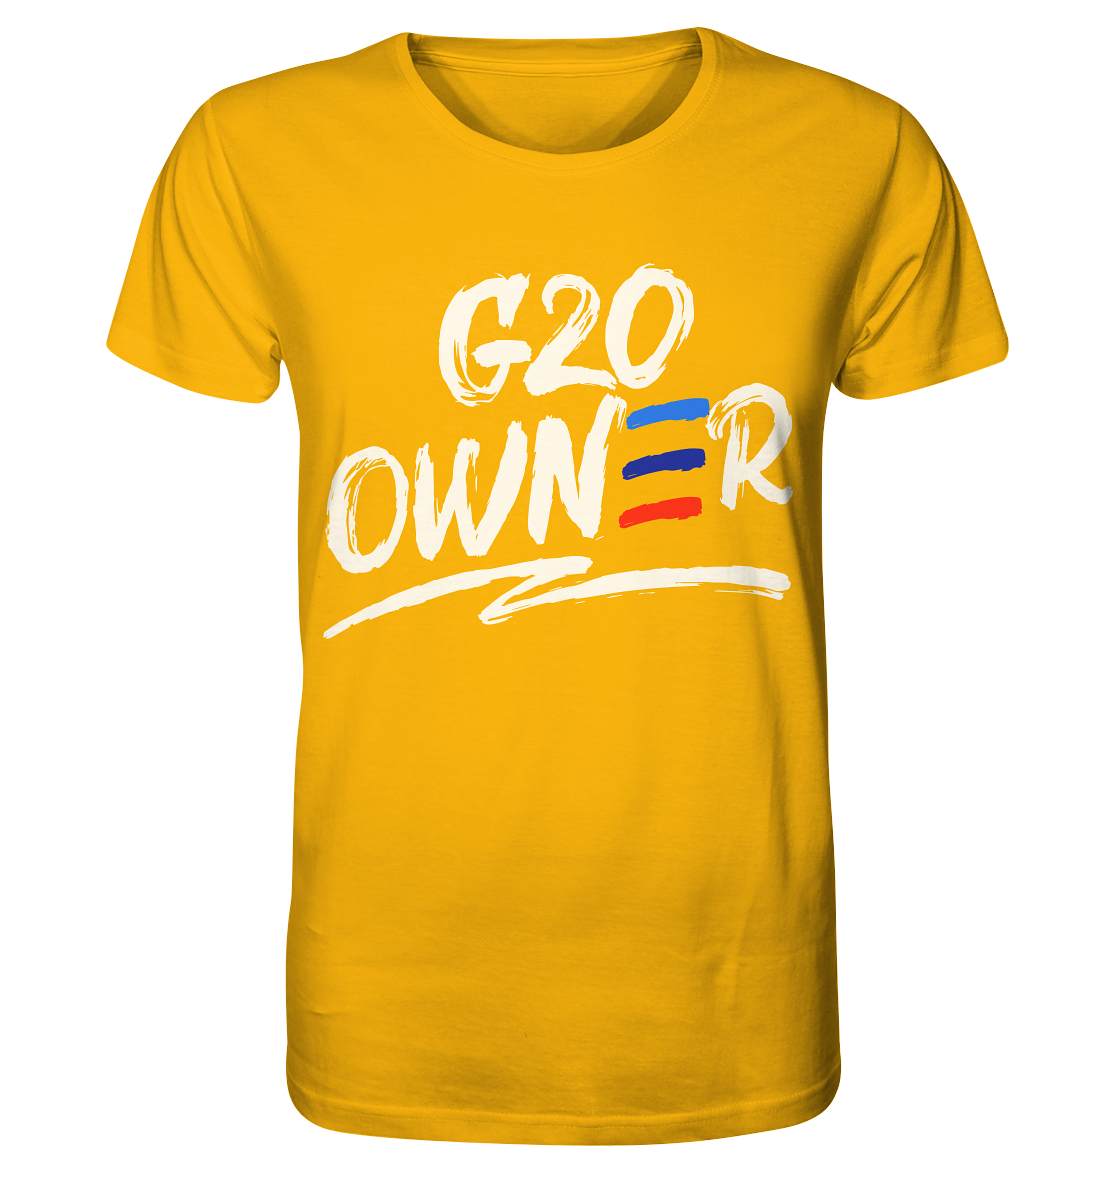 BGKG20OWNER - Organic Shirt